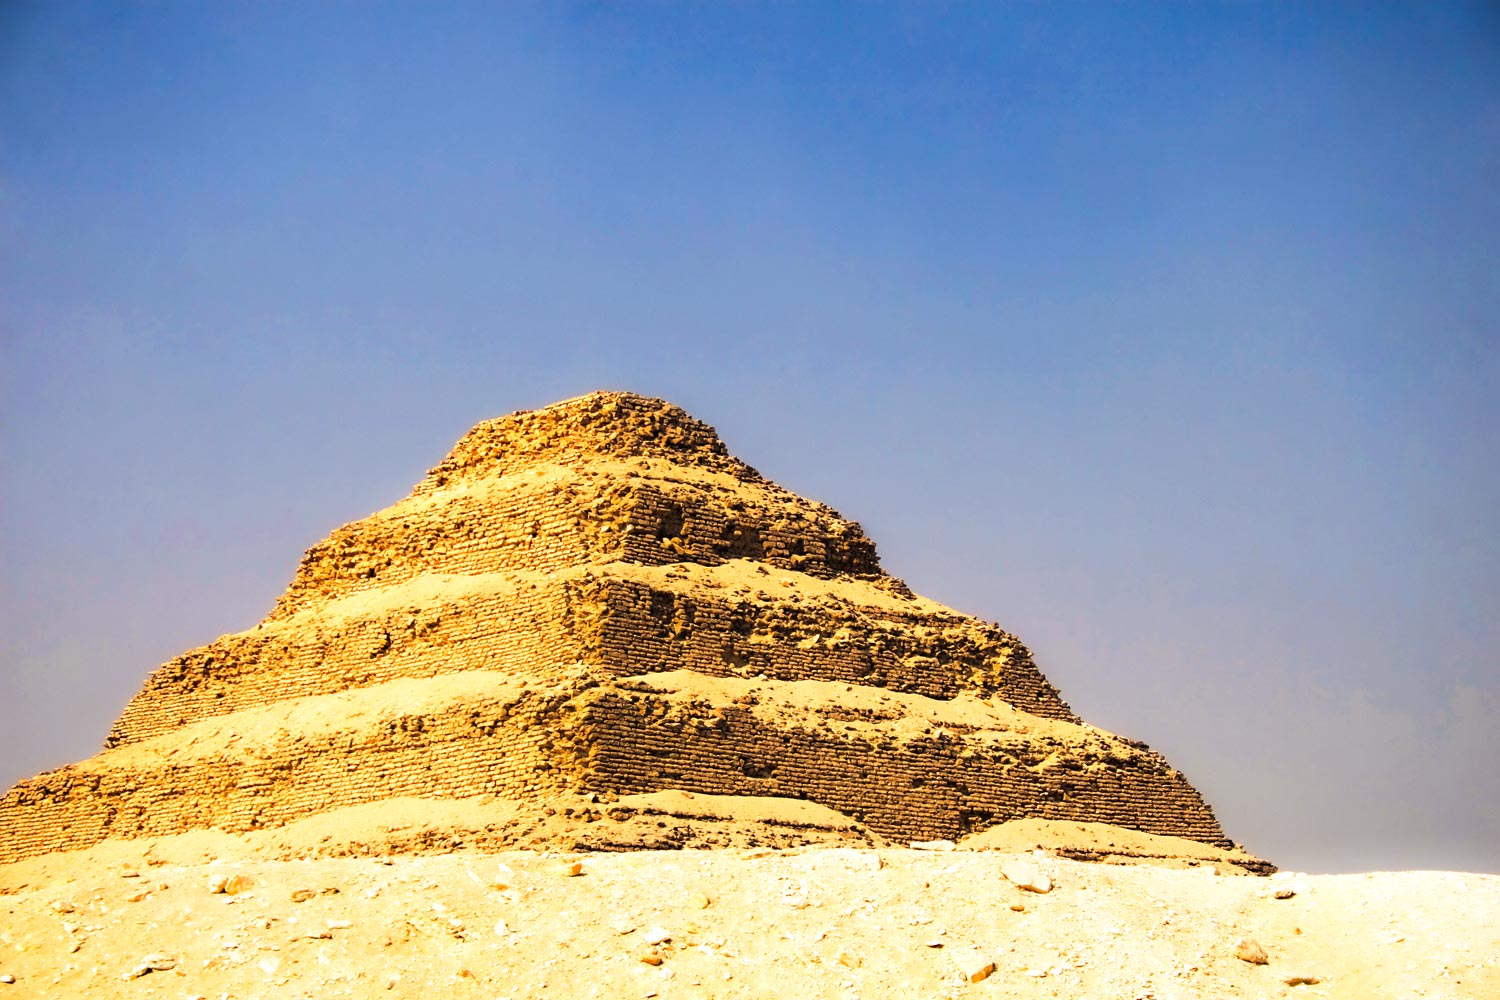 Pirâmide de Djoser